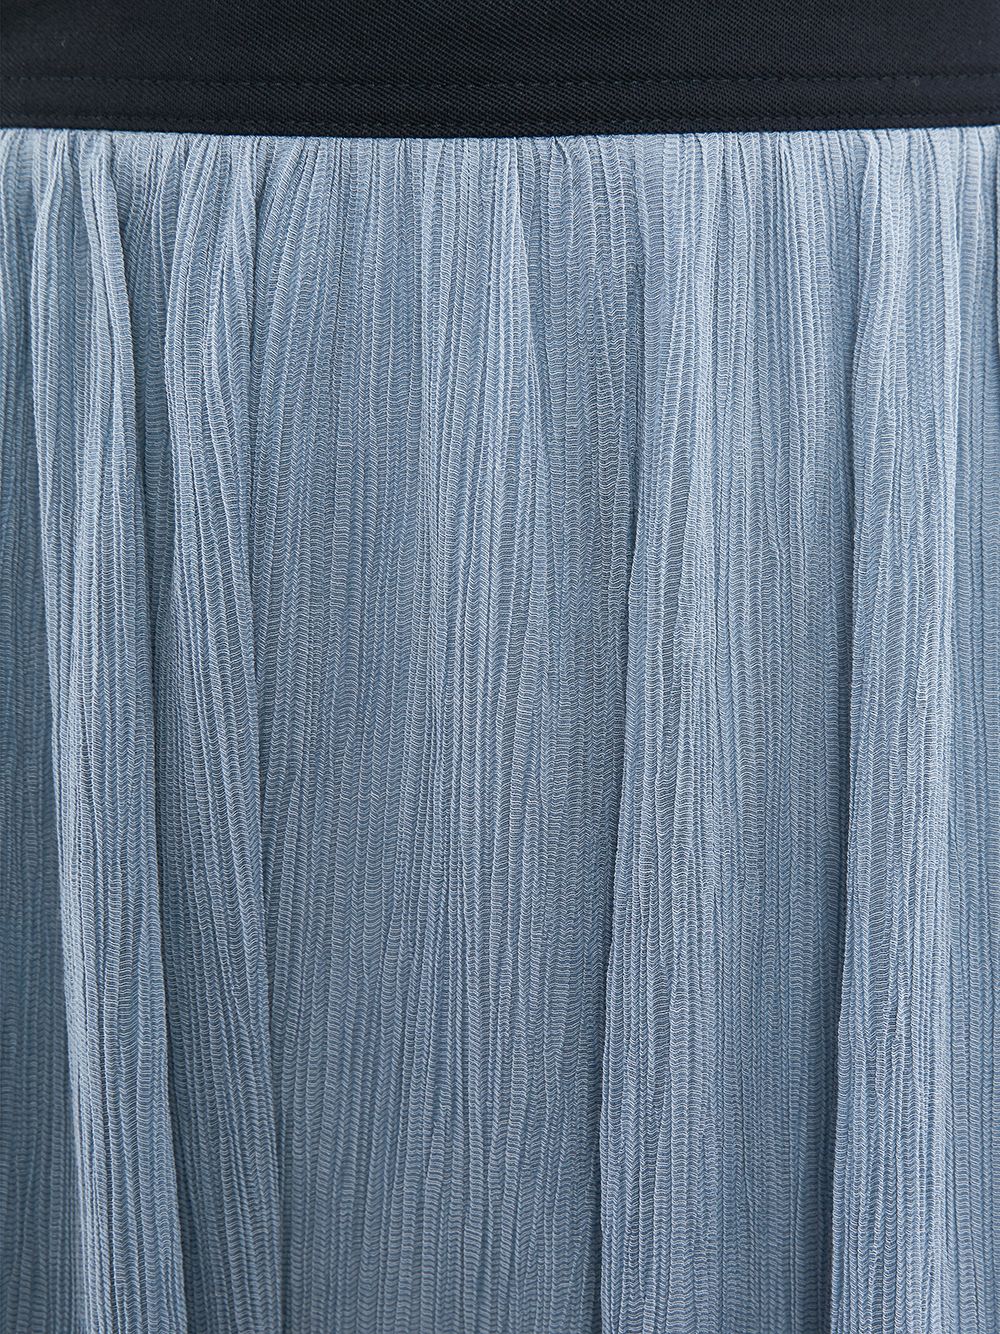 фото Jw anderson расклешенная плиссированная юбка